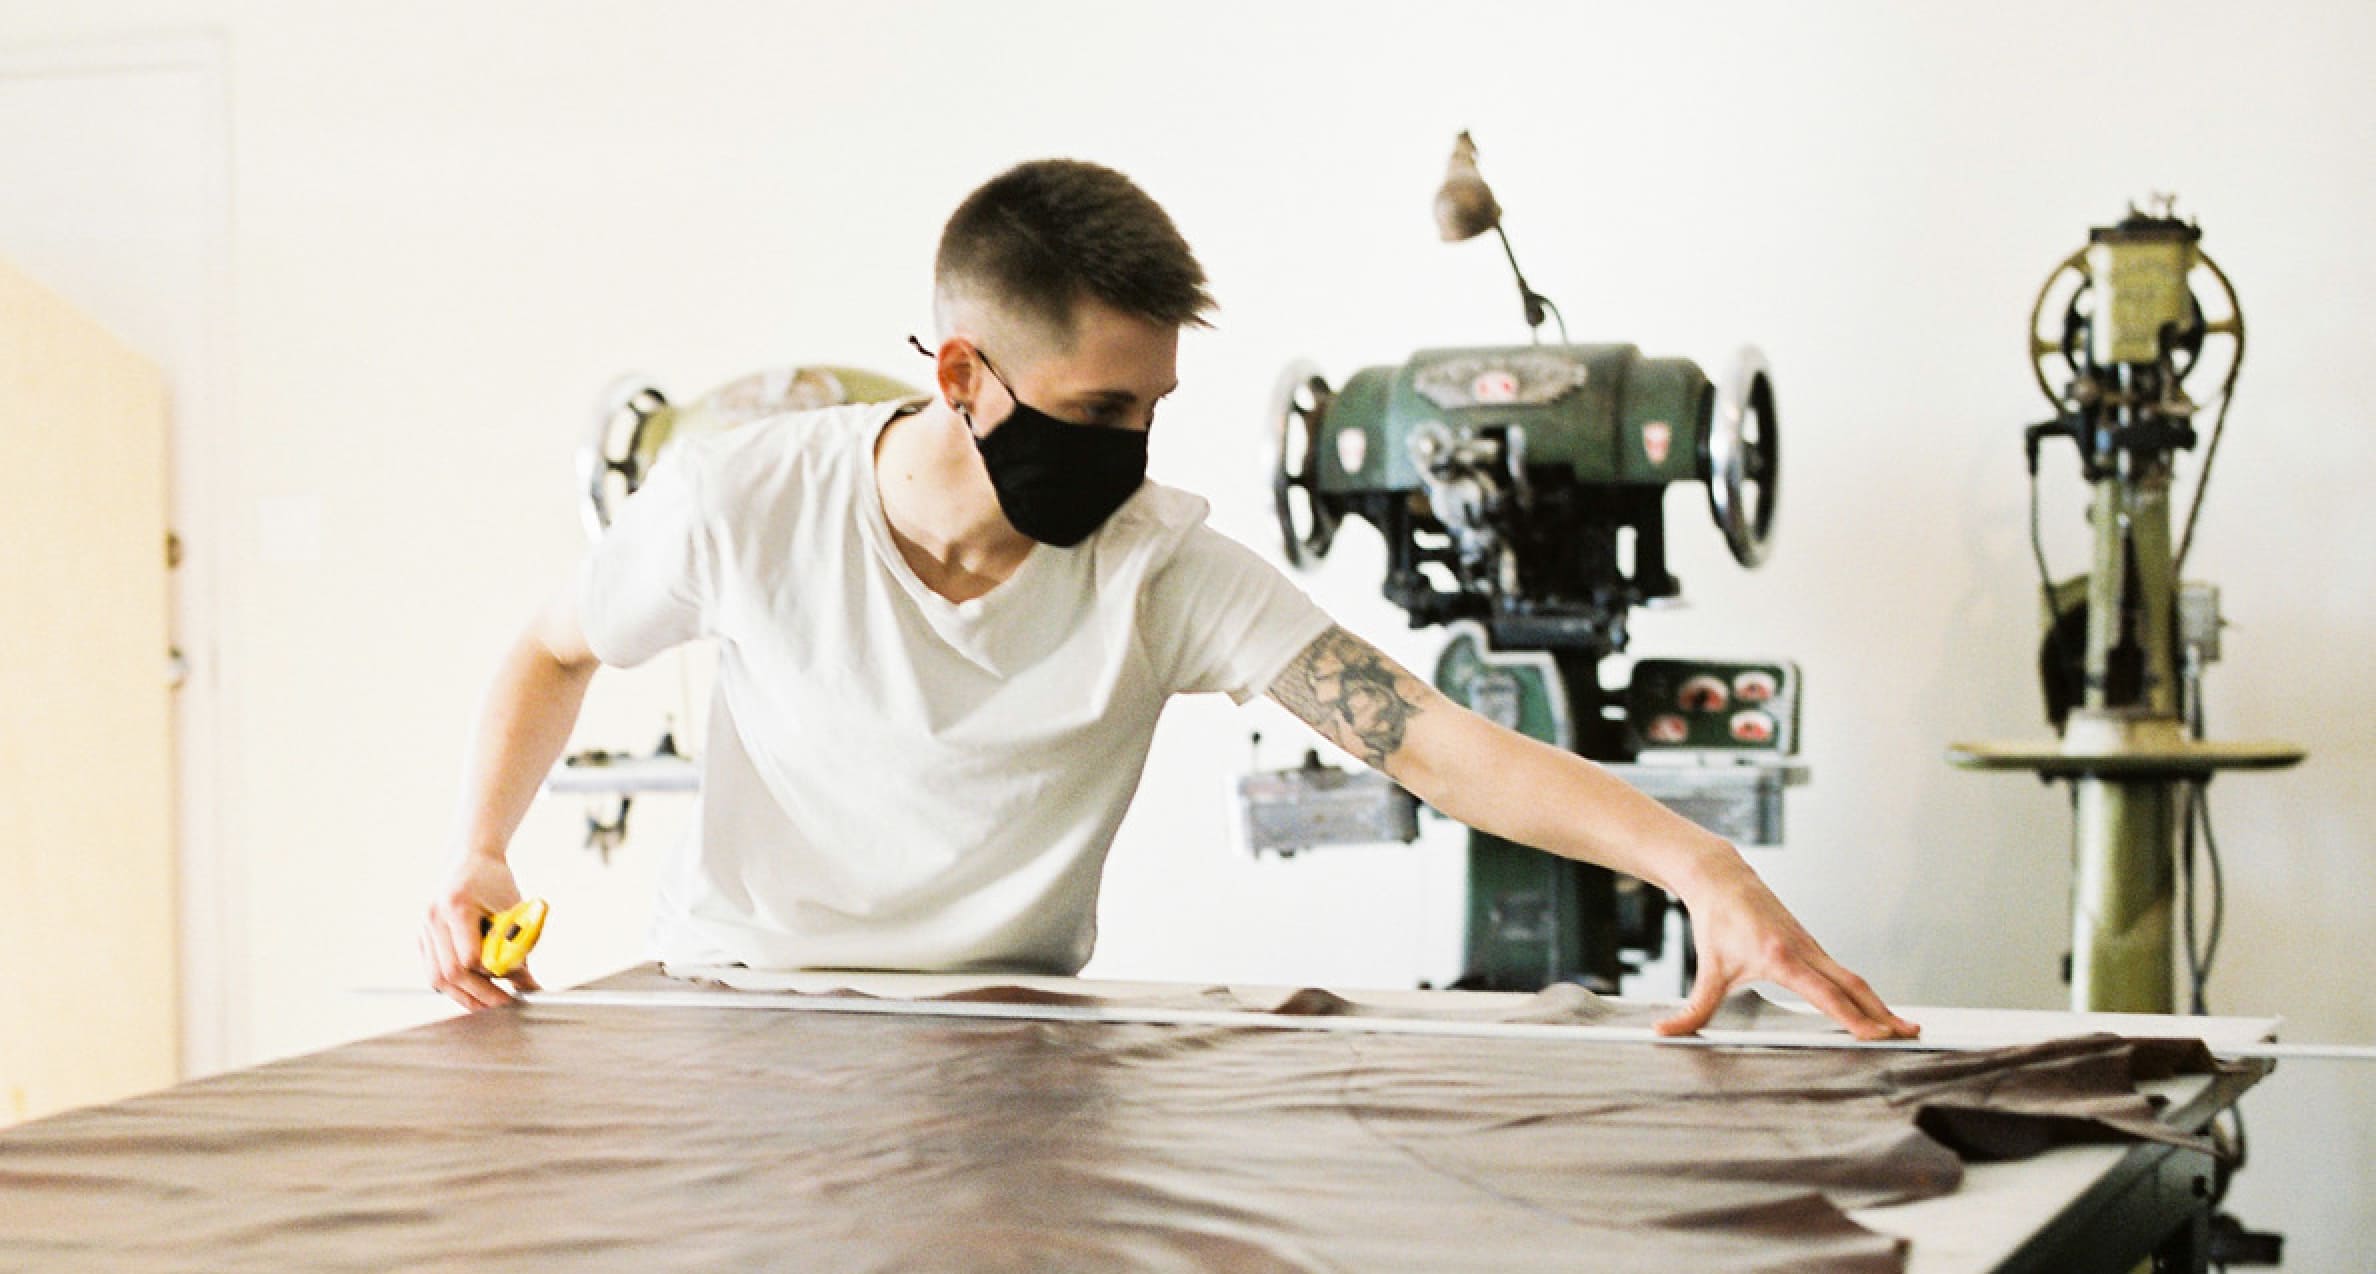 Ariss Grutter, qui porte un t-shirt et un masque en tissu, mesure un tissu sur une table devant deux machines à textile